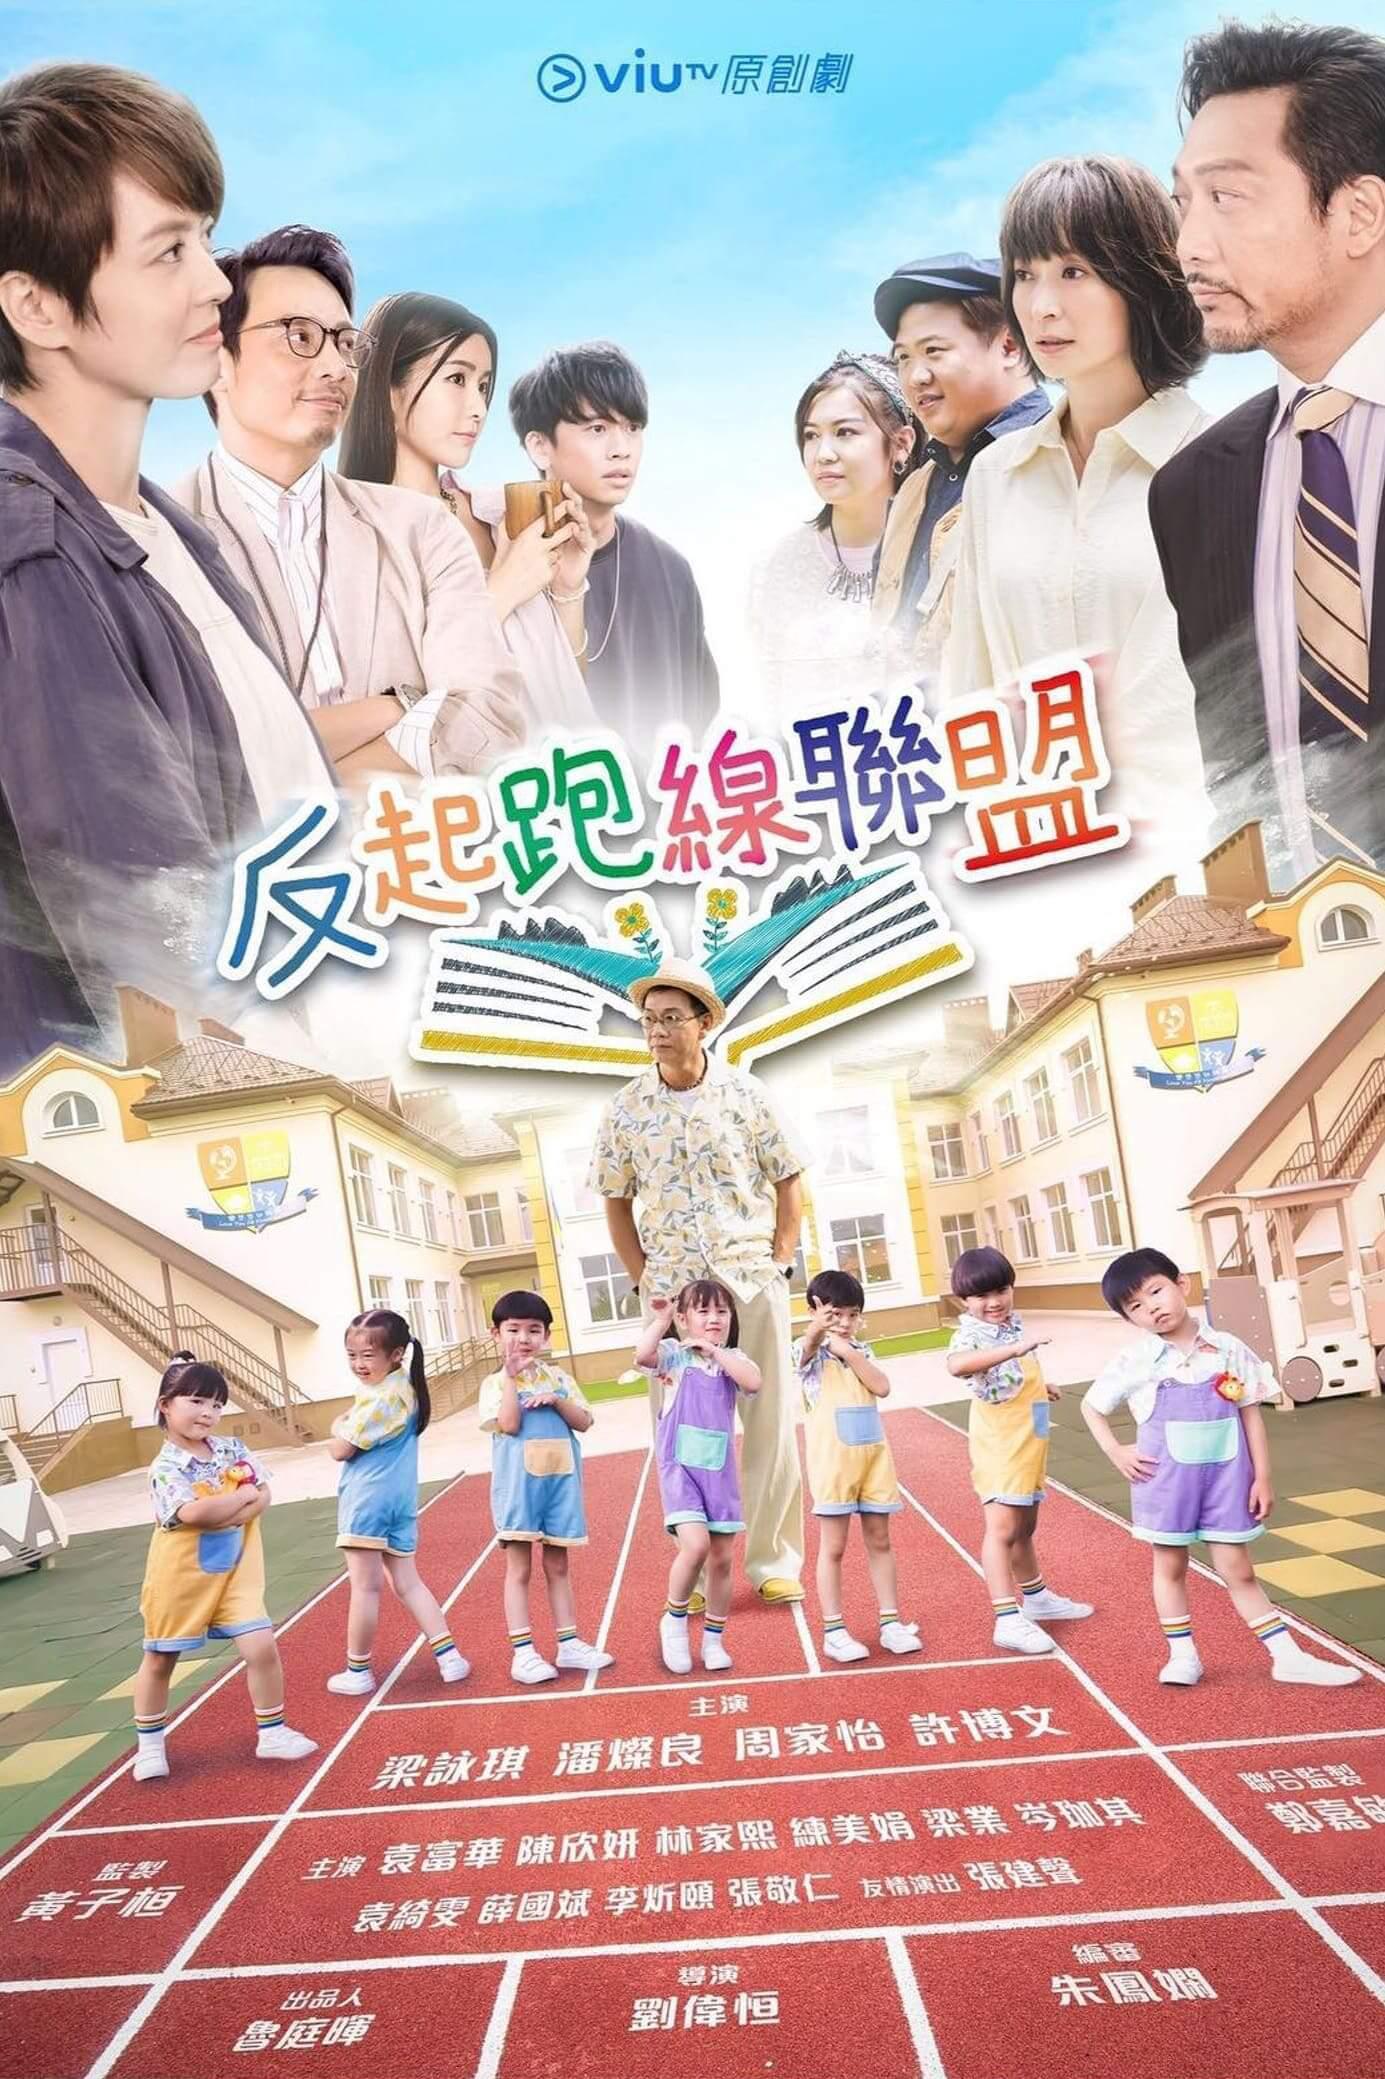 TV ratings for The Parents League (反起跑線聯盟) in Corea del Sur. ViuTV TV series